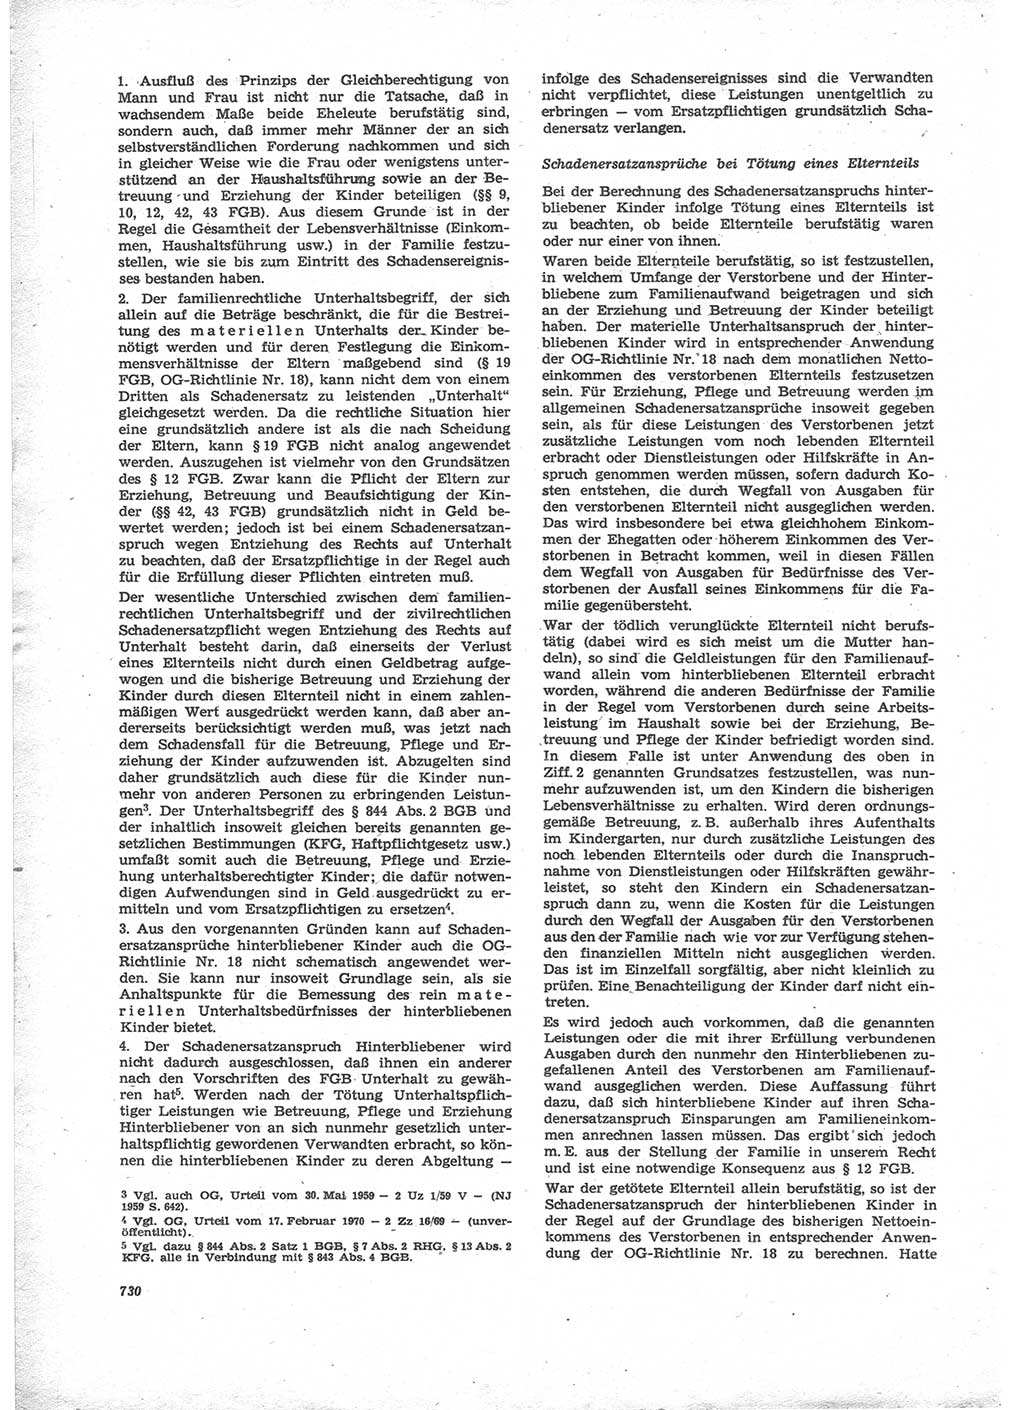 Neue Justiz (NJ), Zeitschrift für Recht und Rechtswissenschaft [Deutsche Demokratische Republik (DDR)], 24. Jahrgang 1970, Seite 730 (NJ DDR 1970, S. 730)